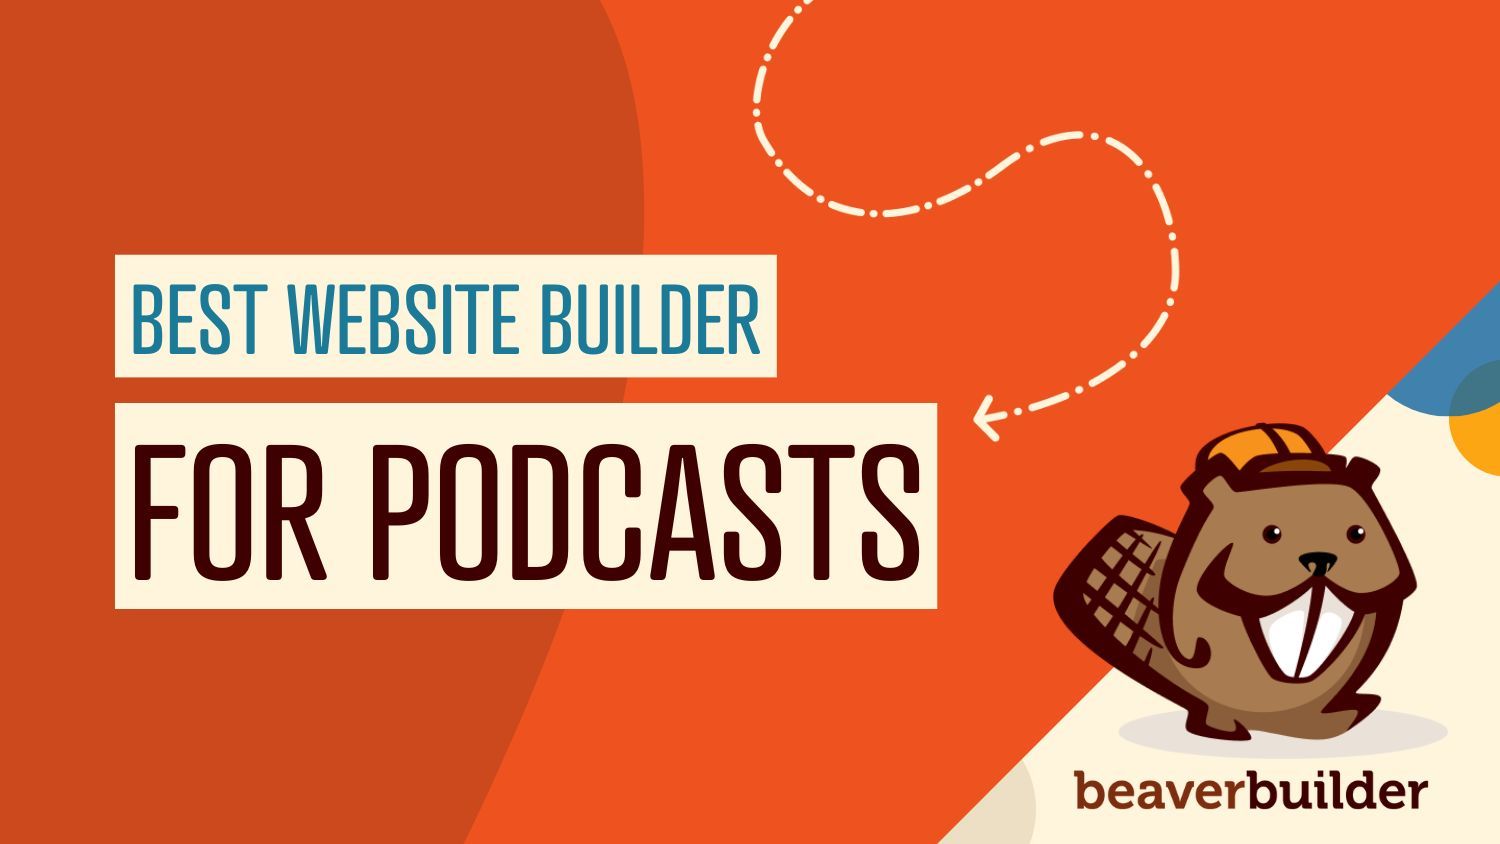 Best website builder for podcasts | Beaver Builder blog